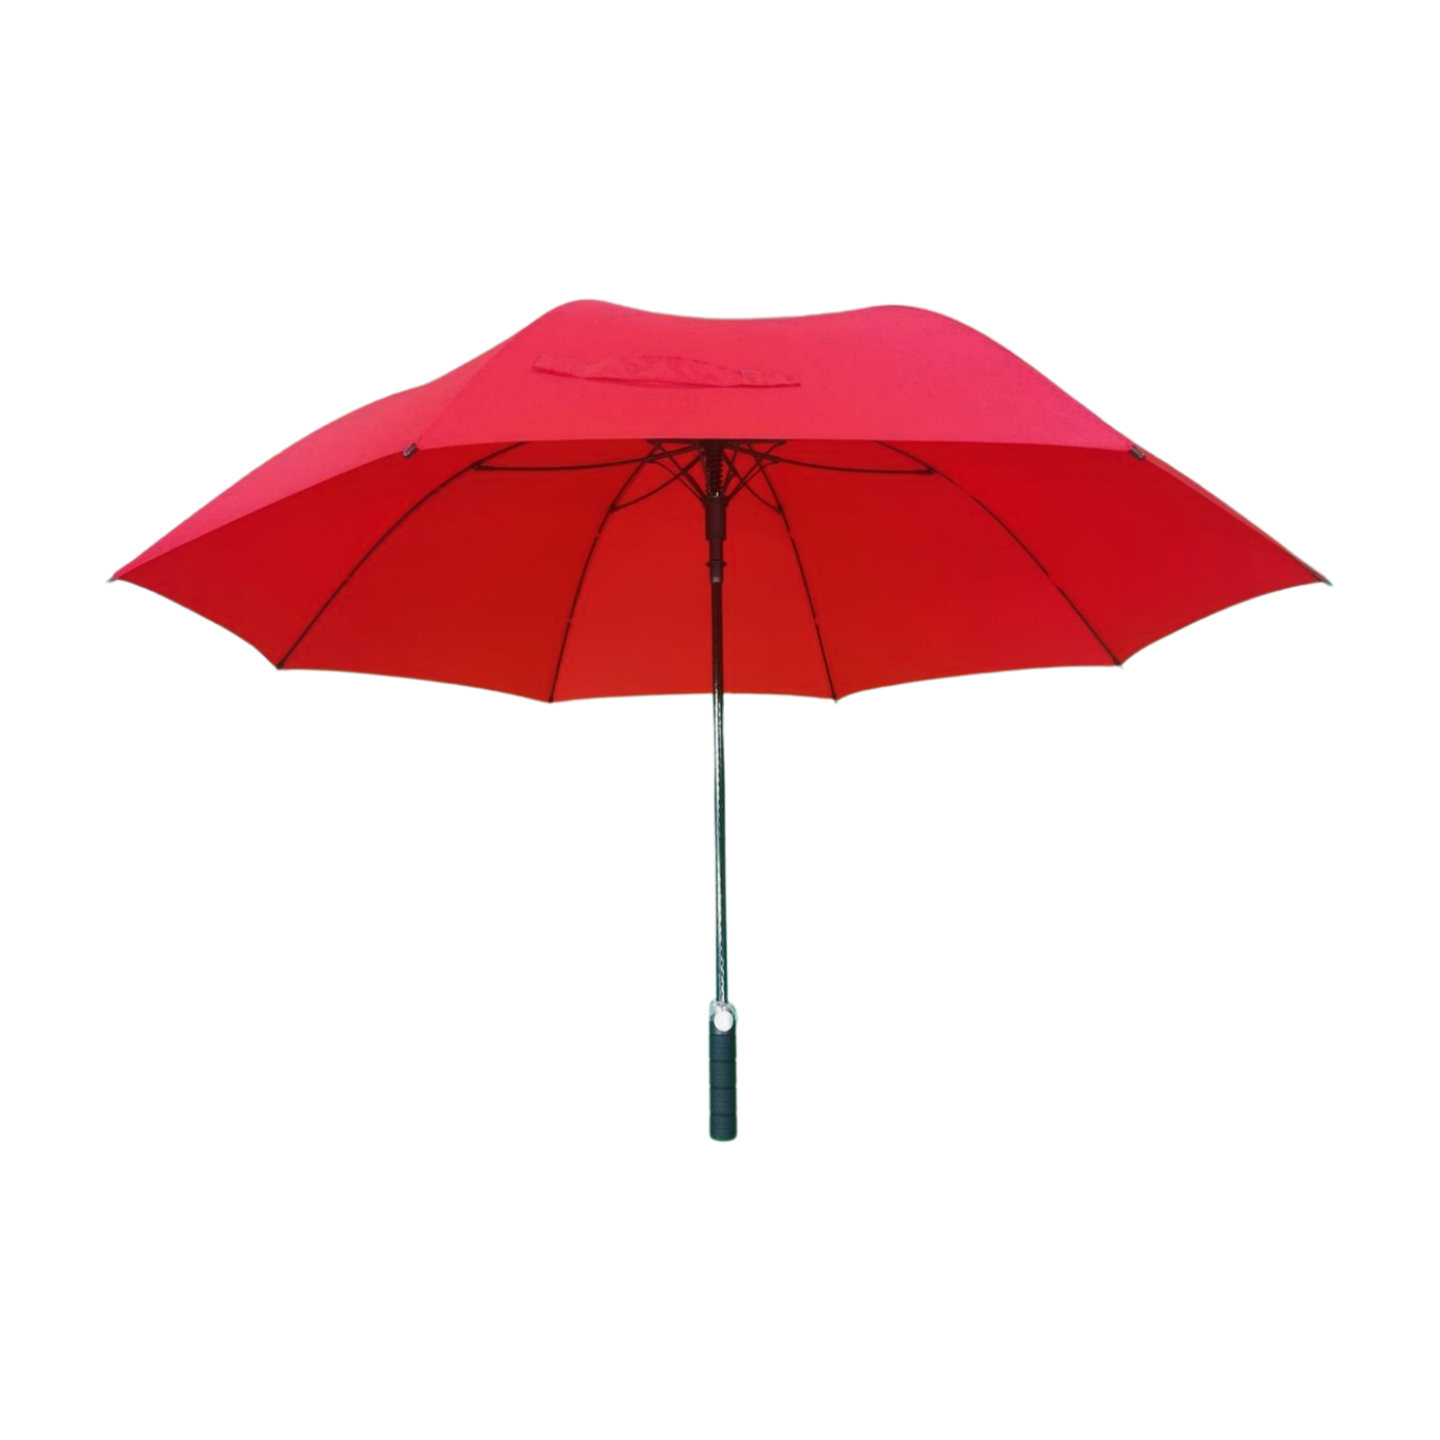 https://www.hodaumbrella.com/unique-golf-umbrella-product/